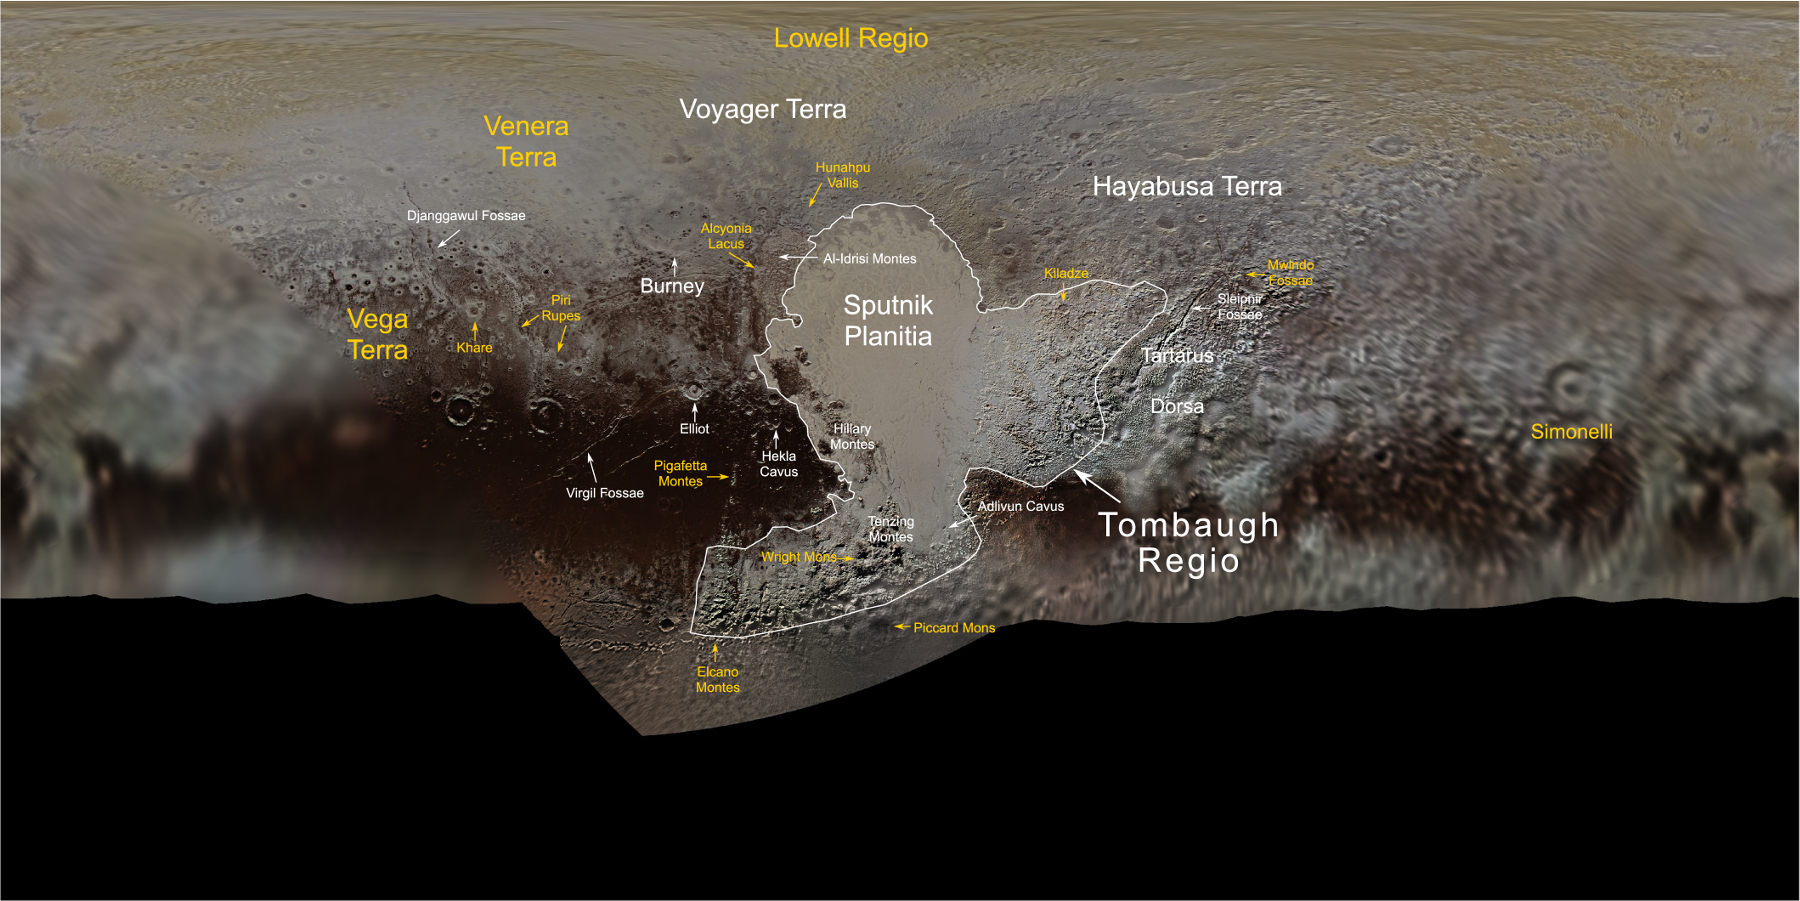 Pluto-Karte. Die neuen Namen sind in gelb dargestellt. Credit: NASA/JHUAPL/SwRI/Ross Beyer